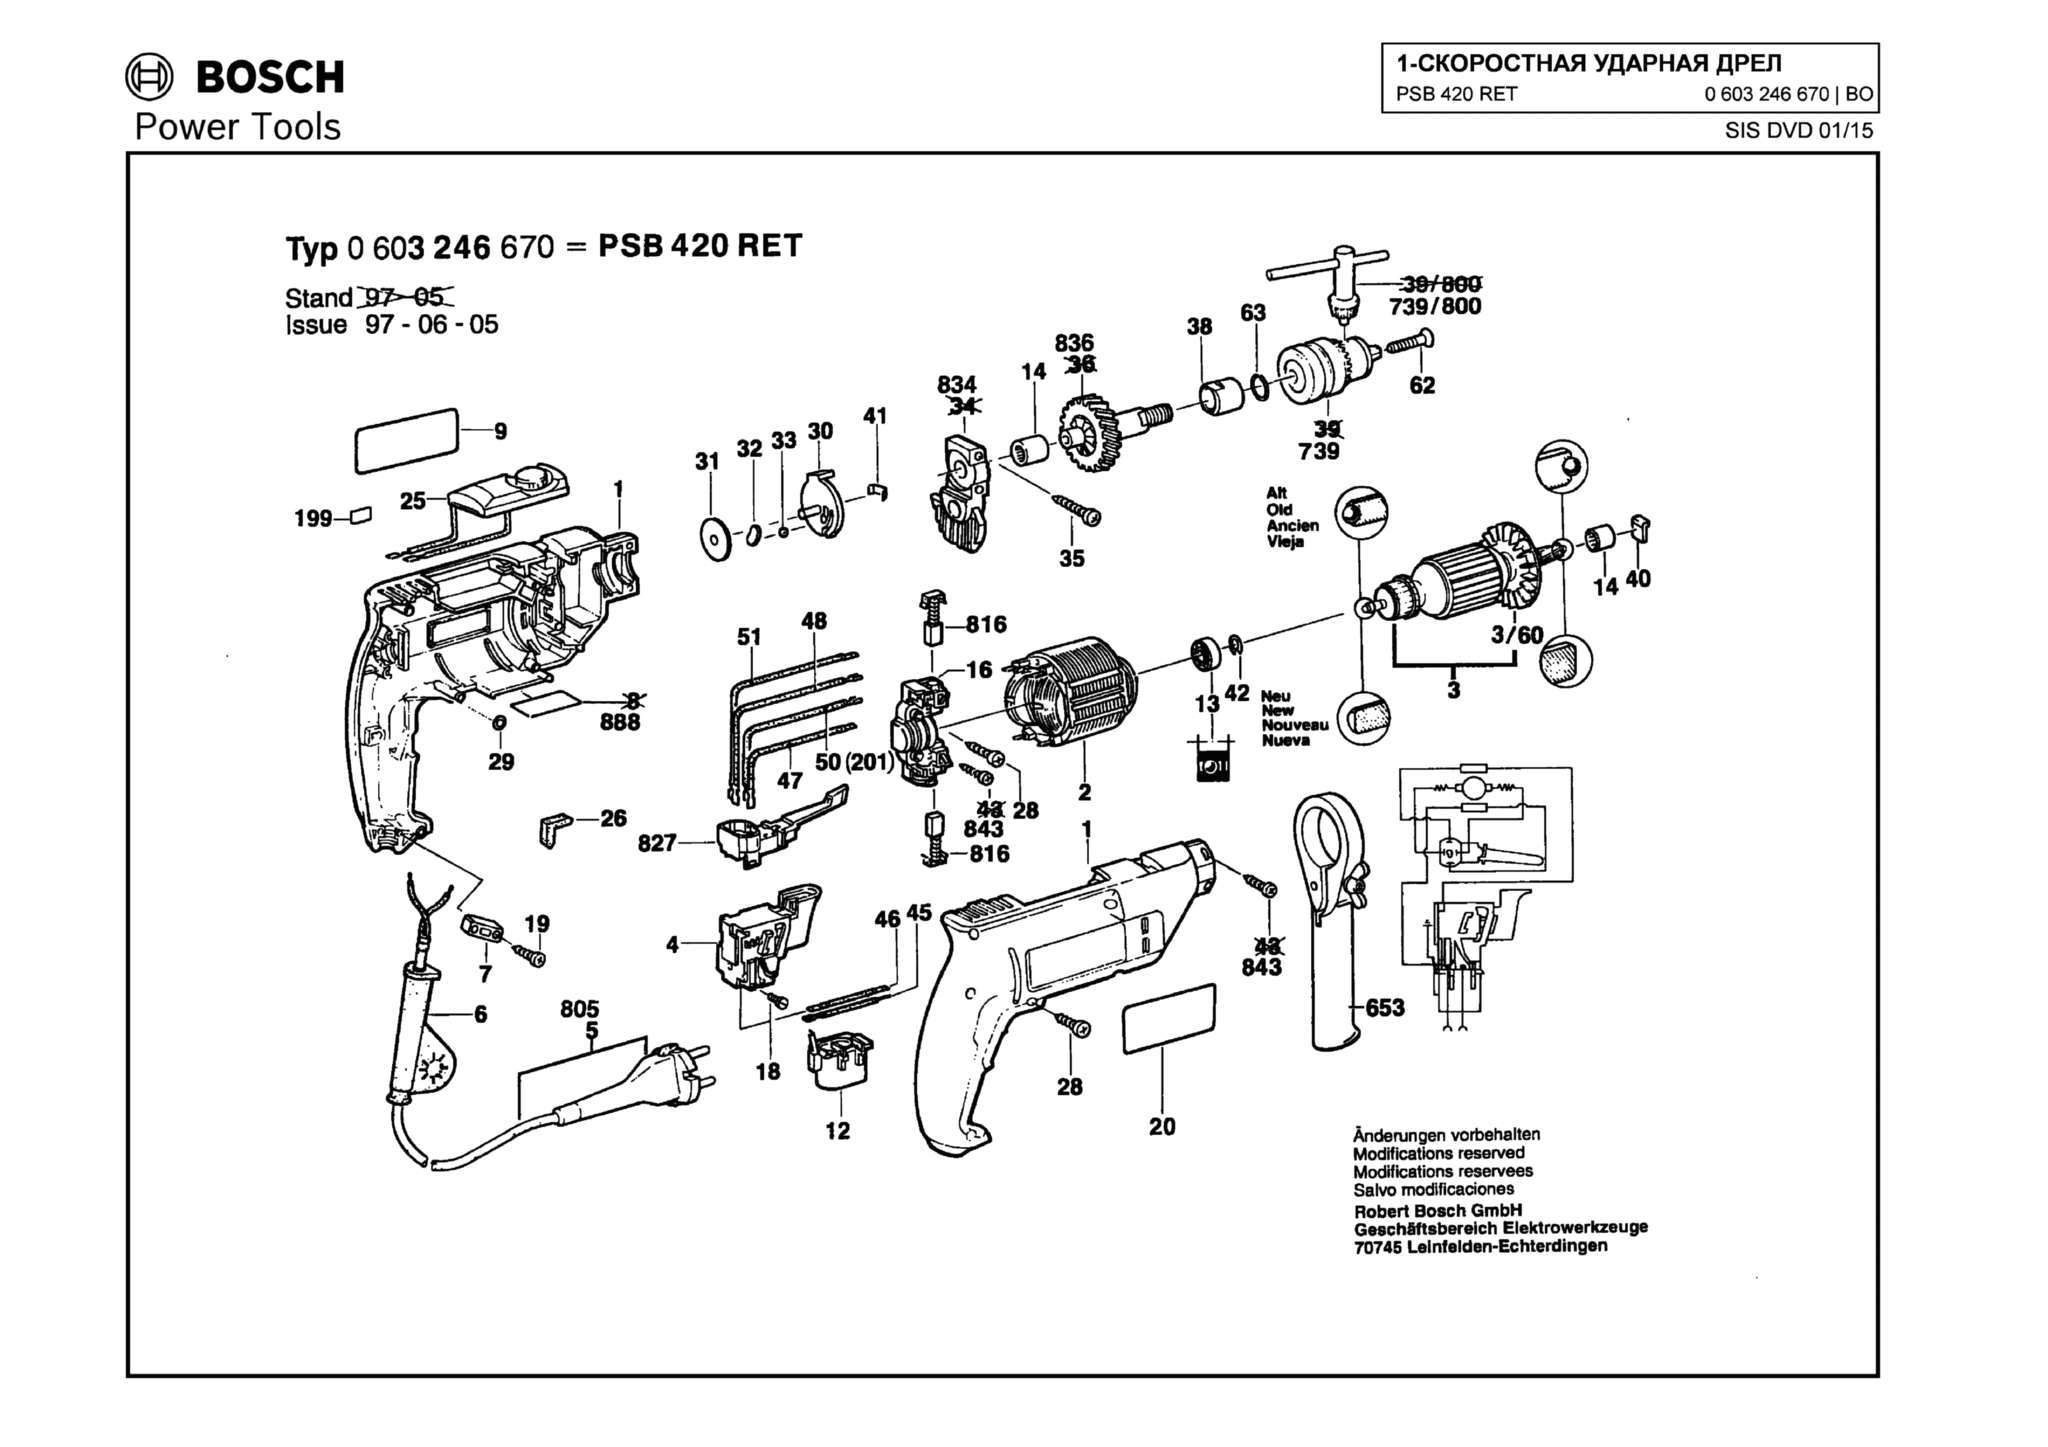 Запчасти, схема и деталировка Bosch PSB 420 RET (ТИП 0603246670)